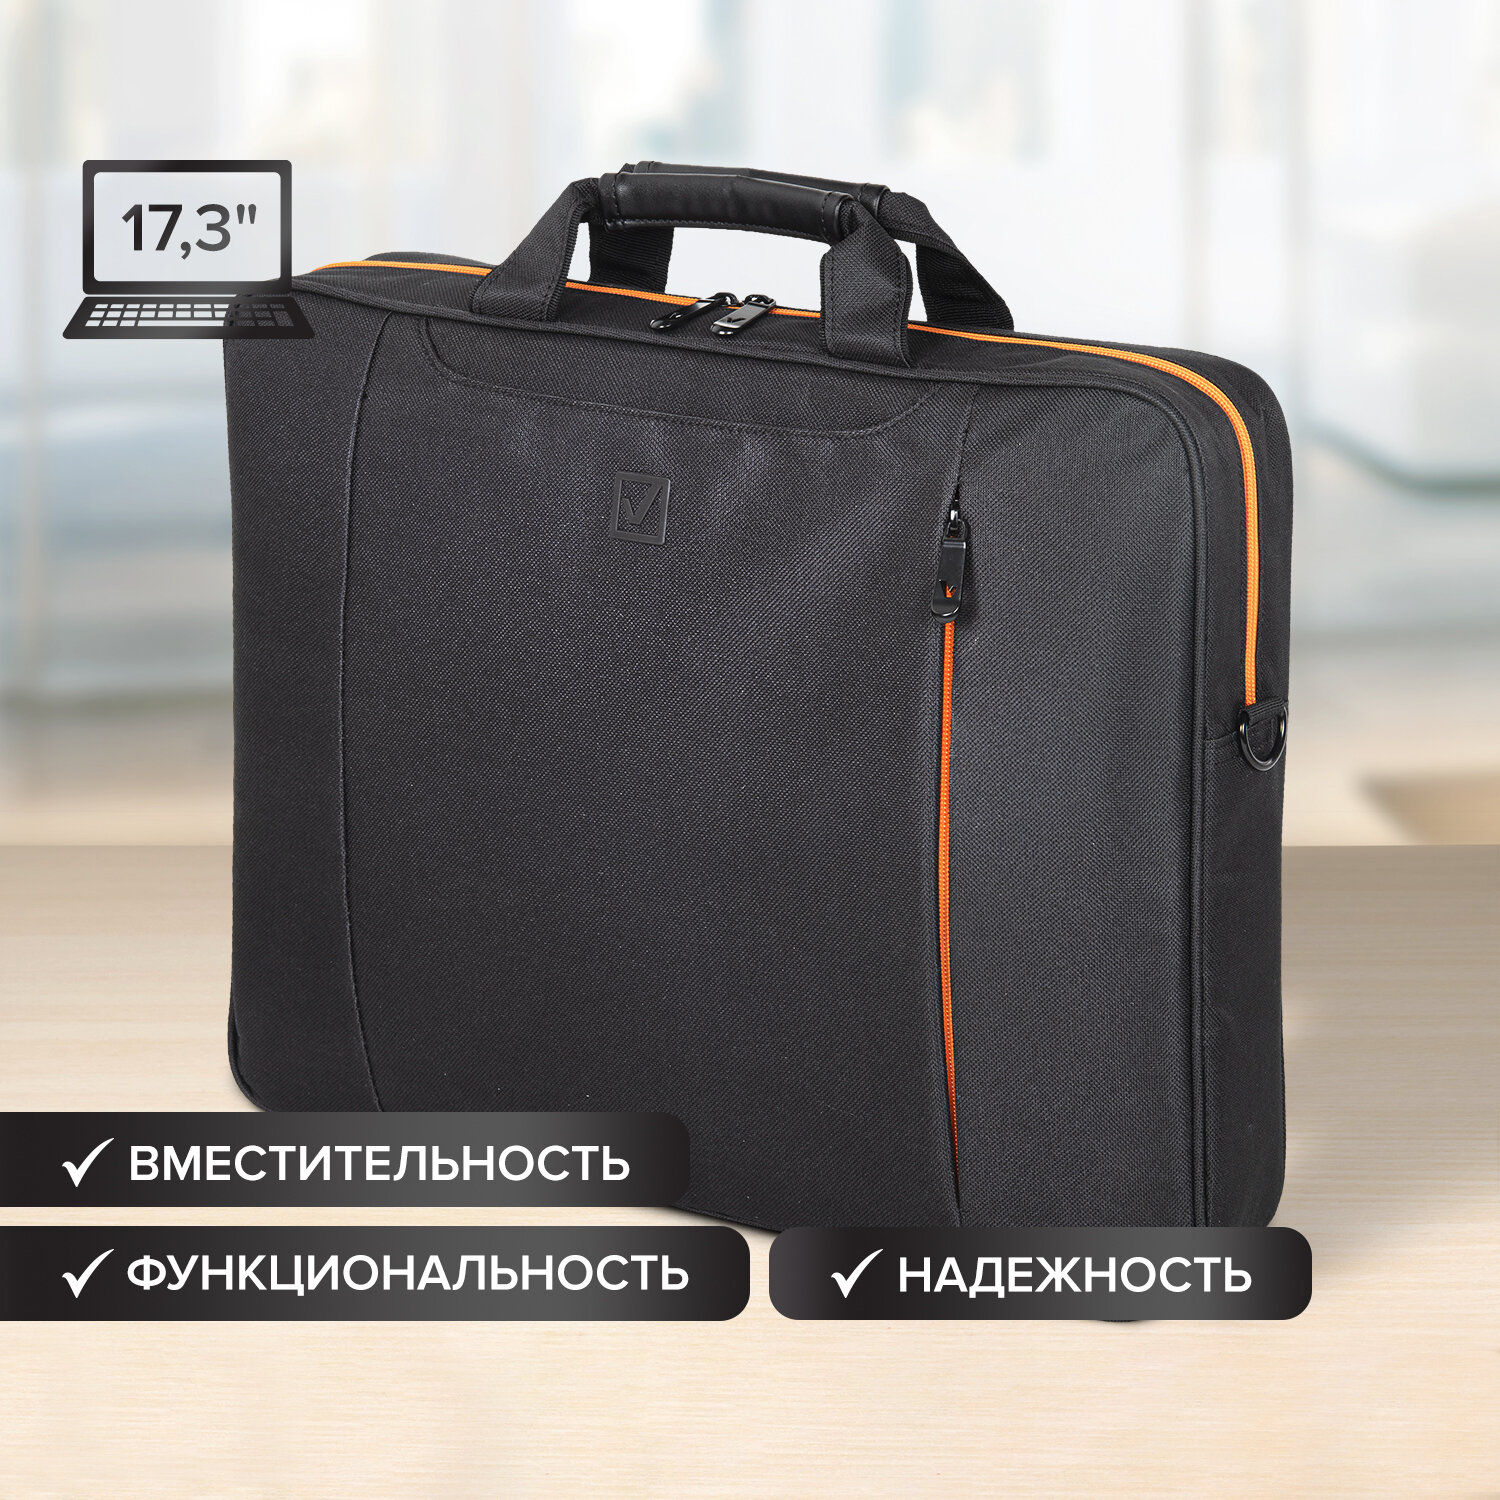 270826, Сумка-портфель BRAUBERG "Office" с отделением для ноутбука 17,3", черная, 44х34х6 см, 270826